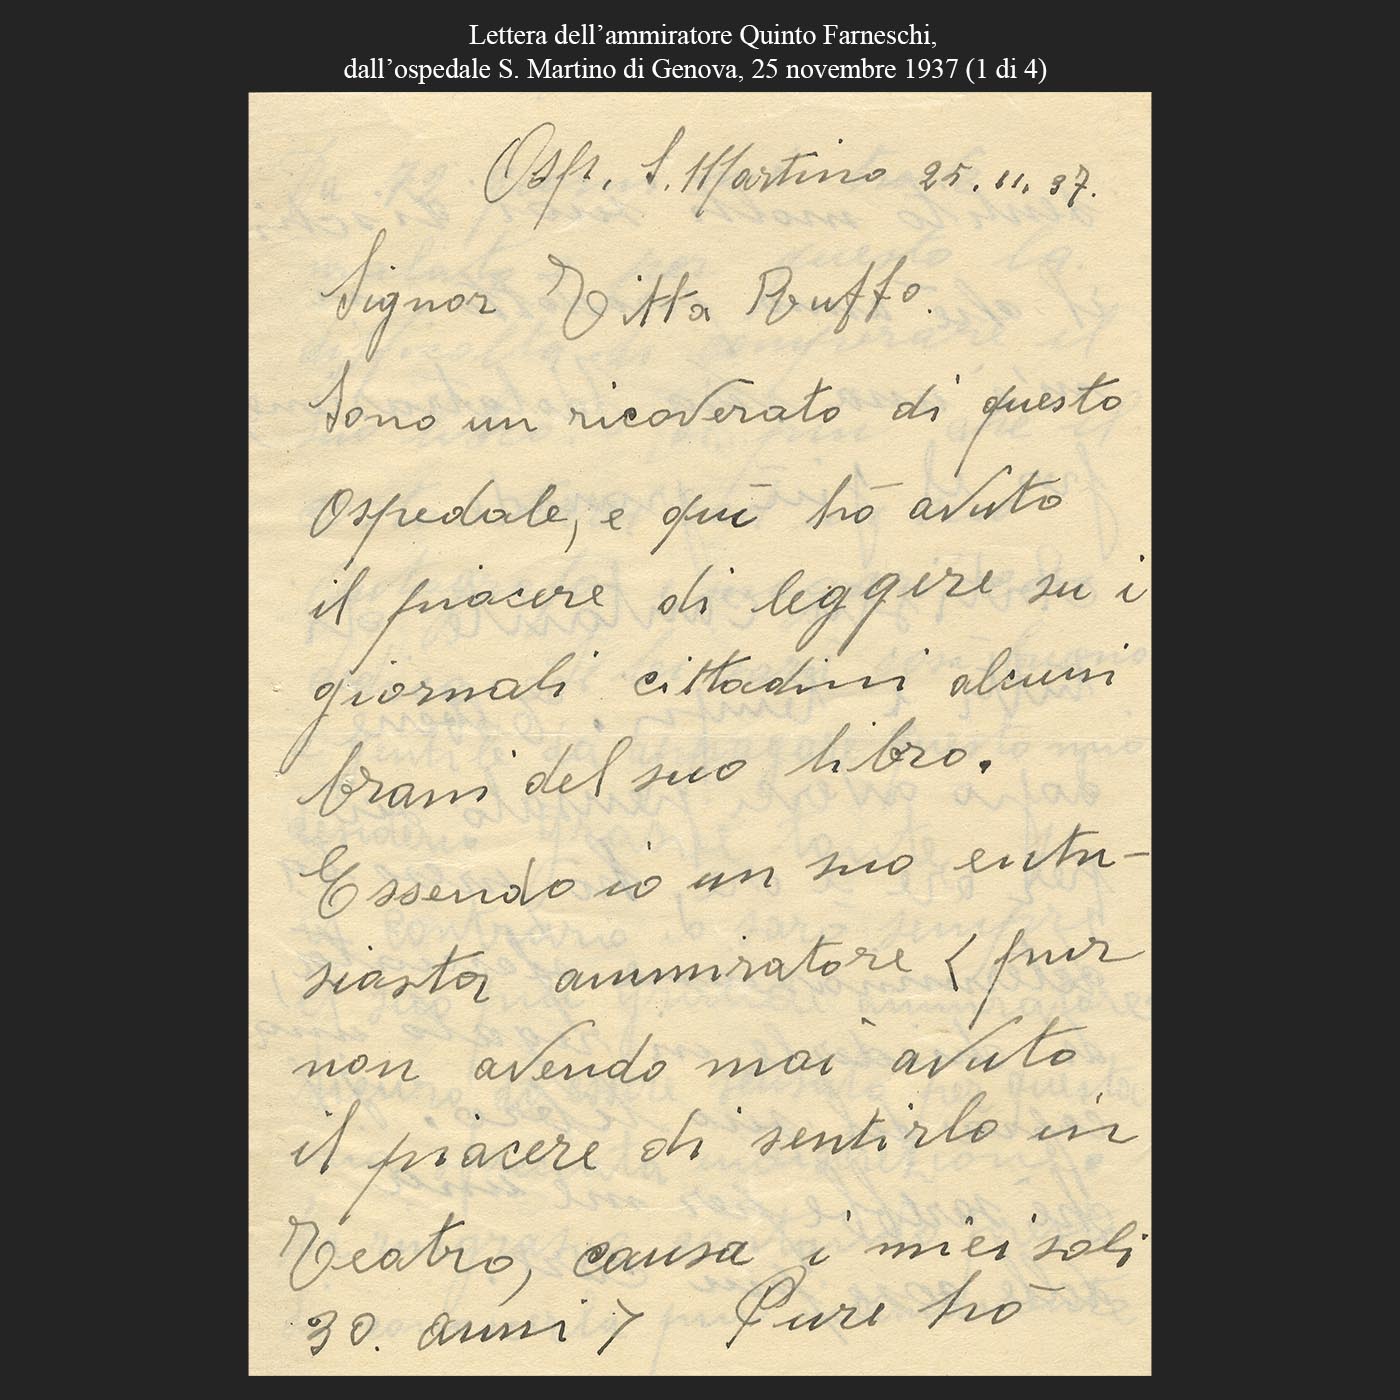 Lettera dell’ammiratore Quinto Farneschi, dall’ospedale S. Martino di Genova, 25 novembre 1937 (1di4)